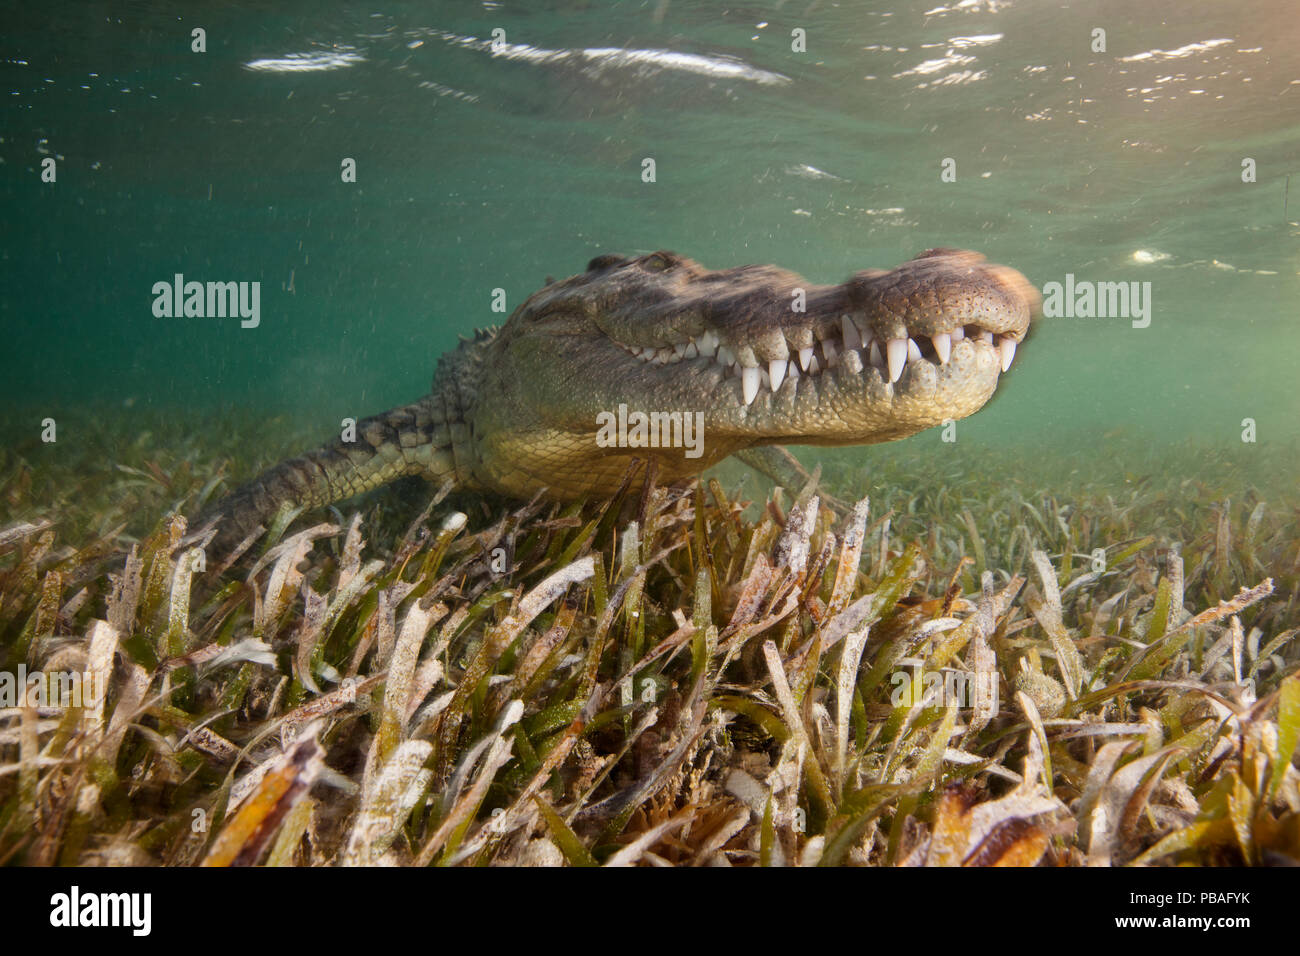 Coccodrillo americano (Crocodylus acutus) ritratto su letto di fanerogame Nello shallow ater, Banco Chinchorro Riserva della Biosfera, regione dei Caraibi, Messico, maggio. Foto Stock